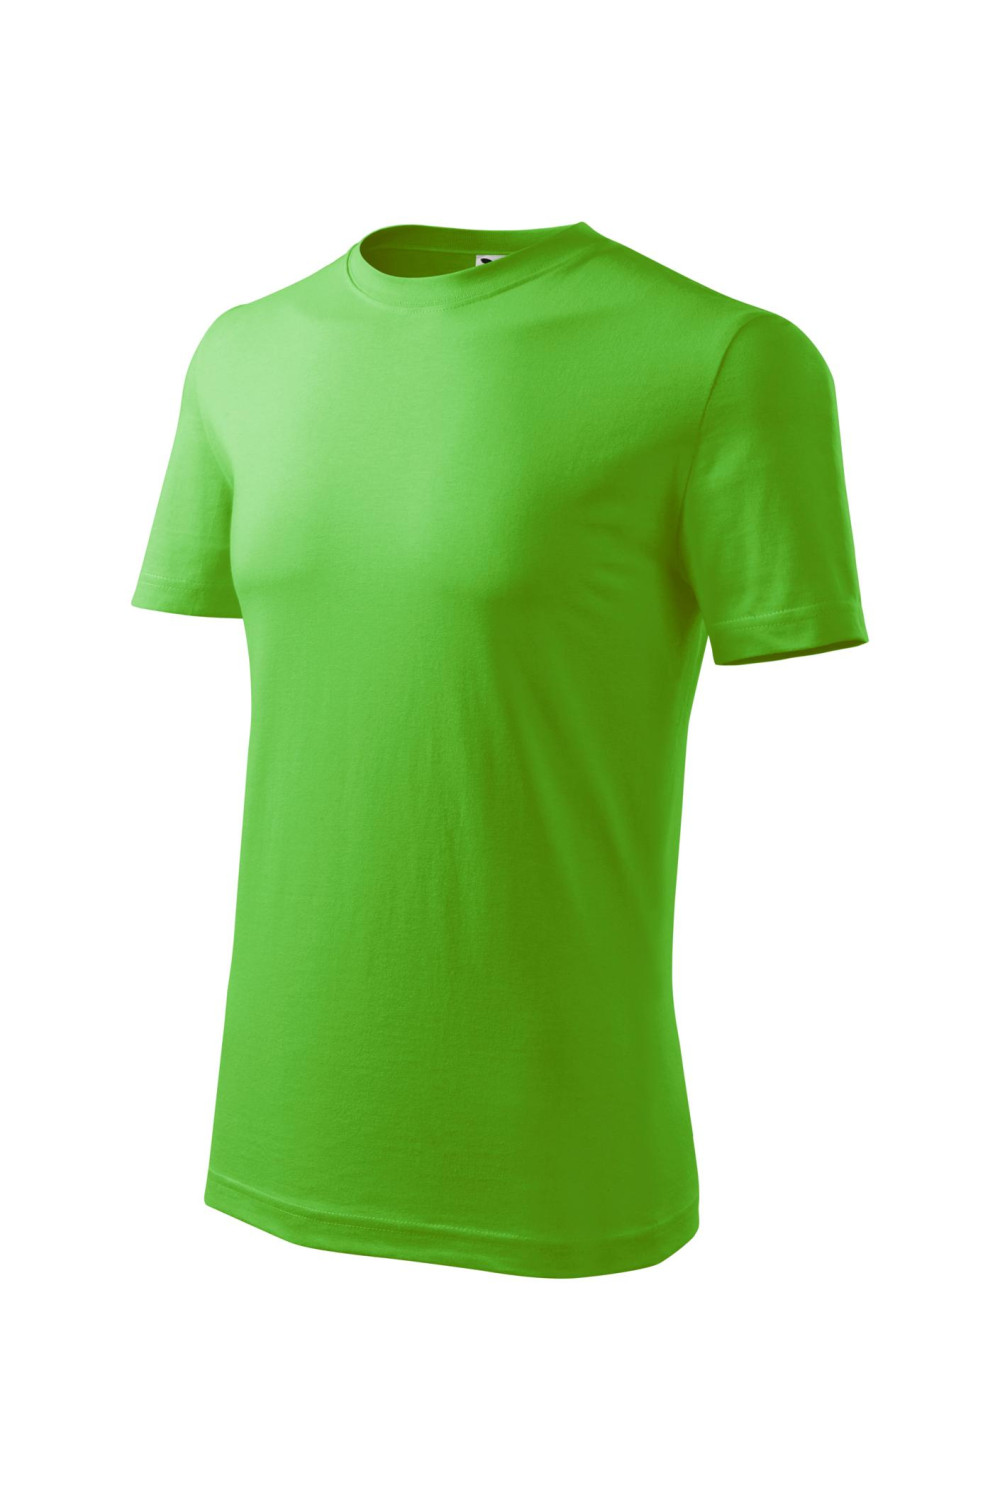 Koszulka męska 100% bawełna CLASSIC 132 green apple